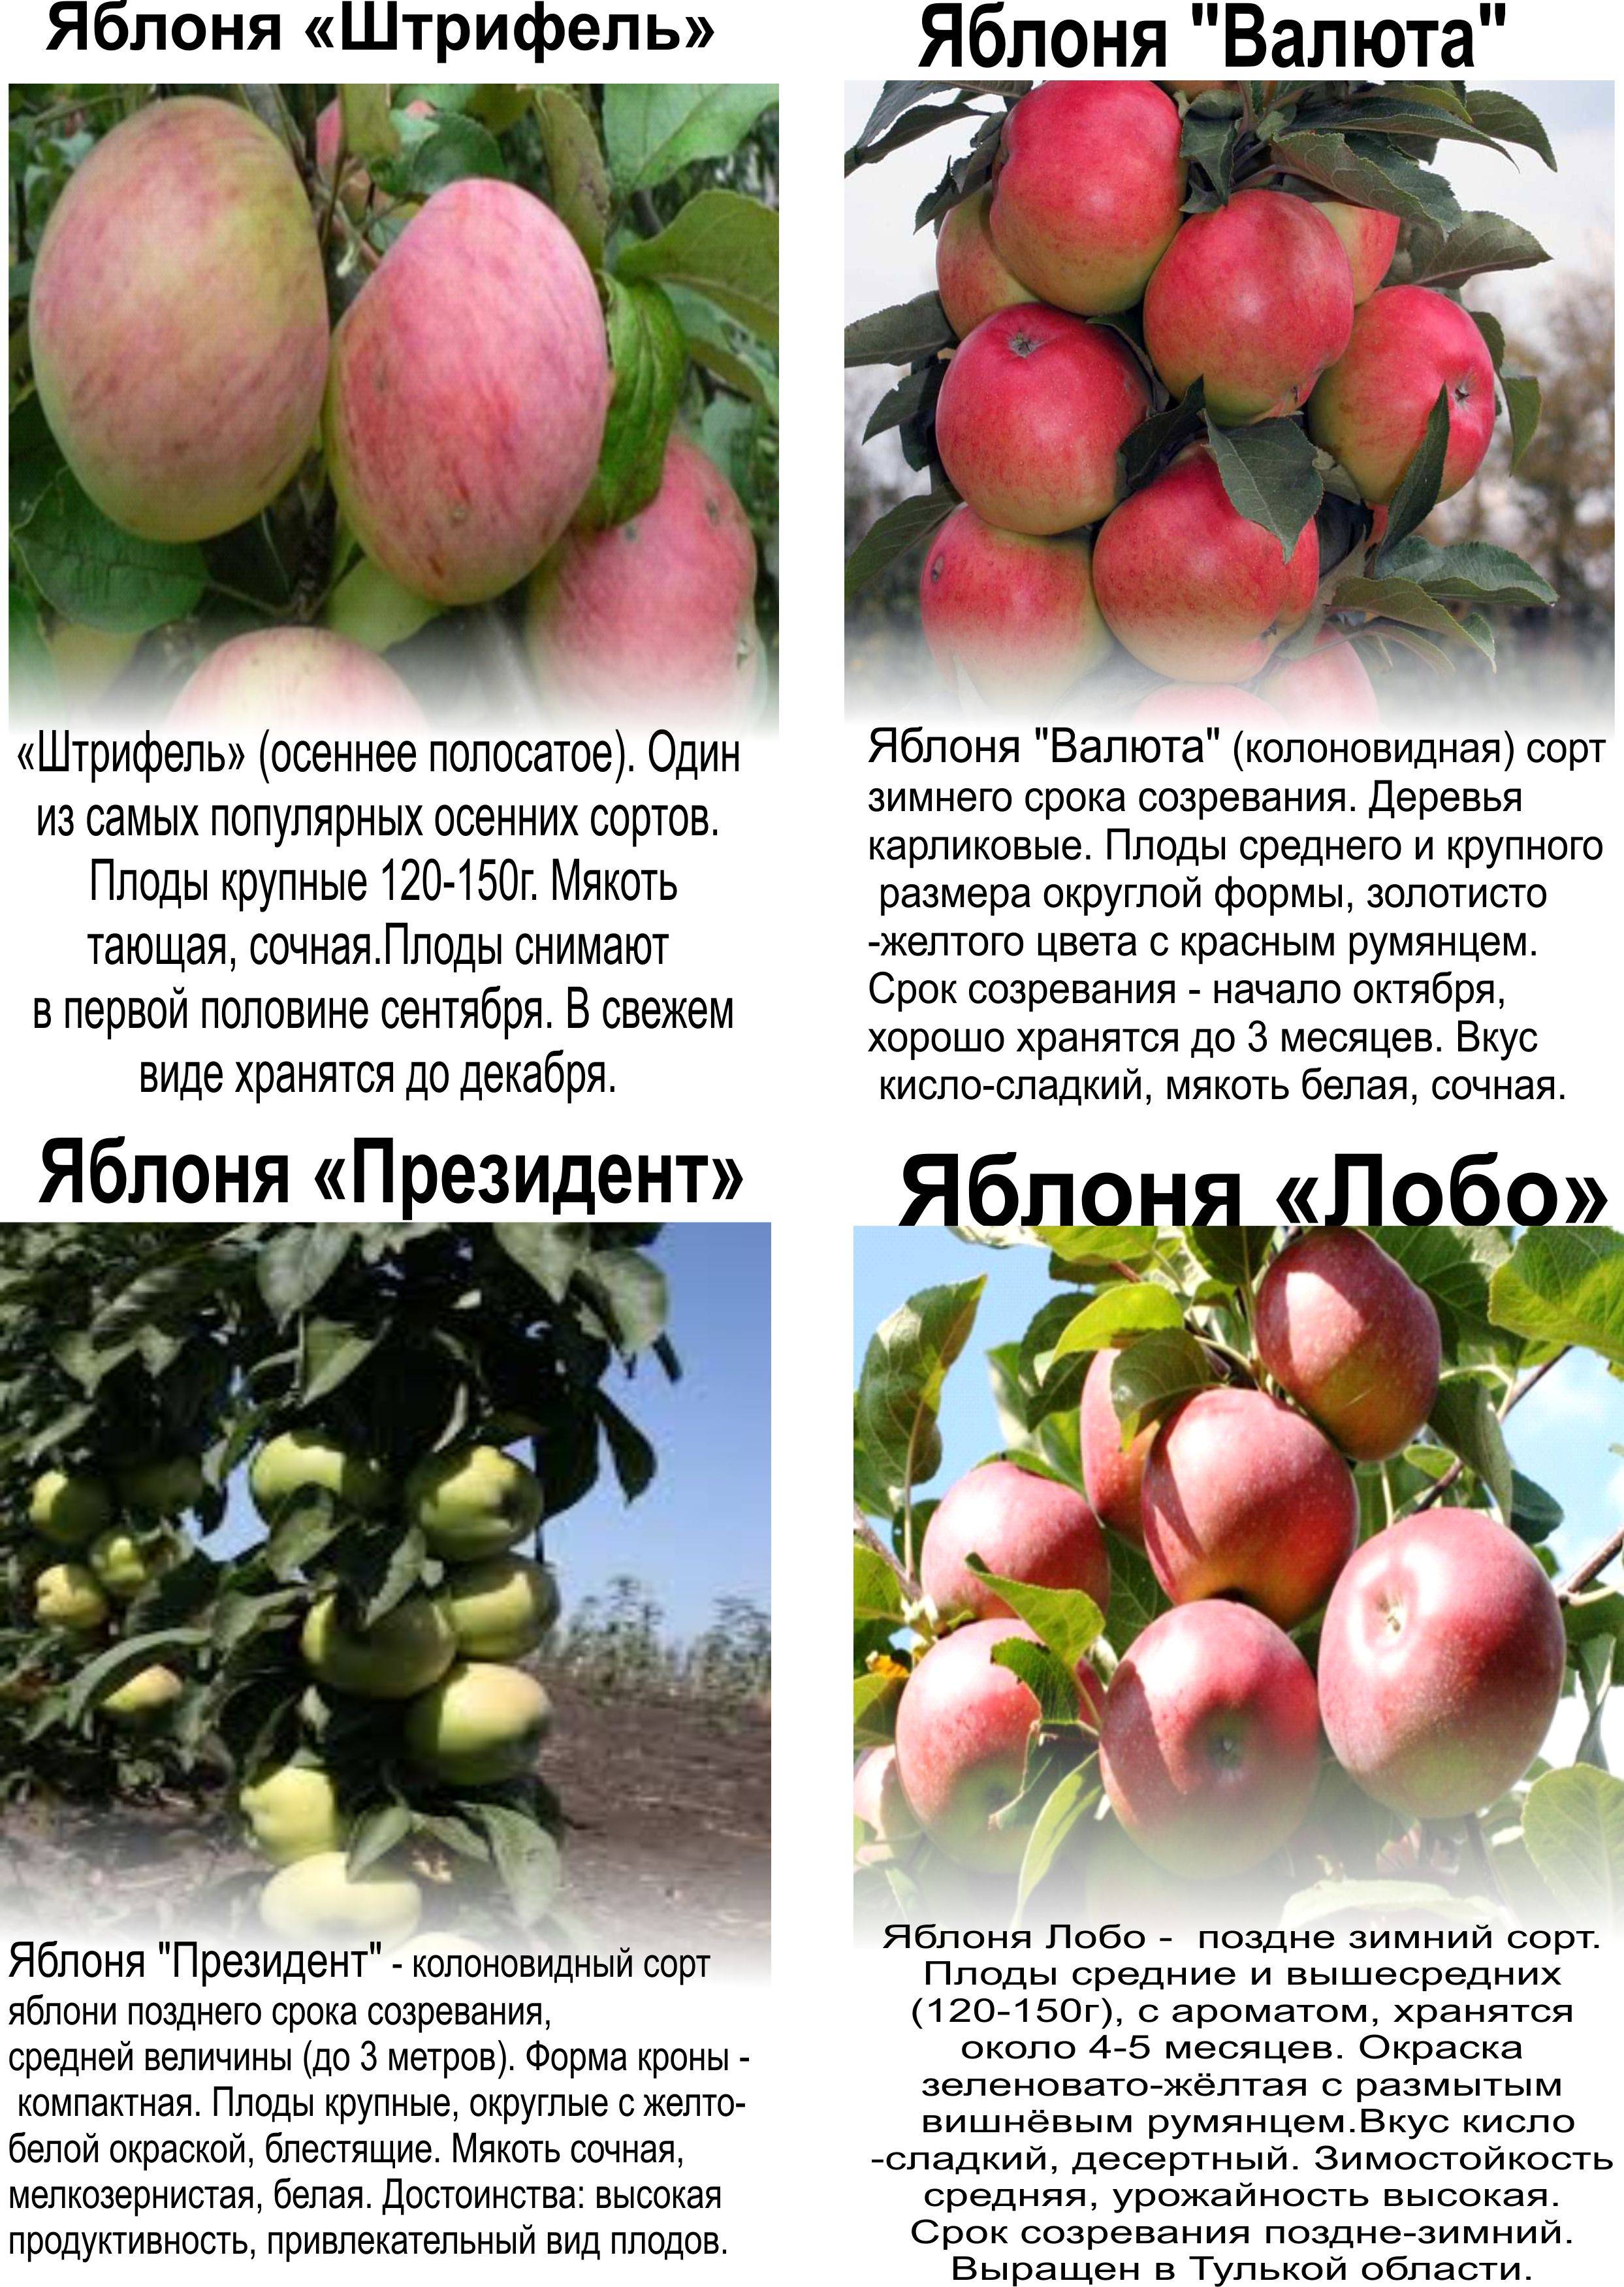 Сорт яблони останкино, описание, характеристика и отзывы, а также особенности выращивания данного сорта